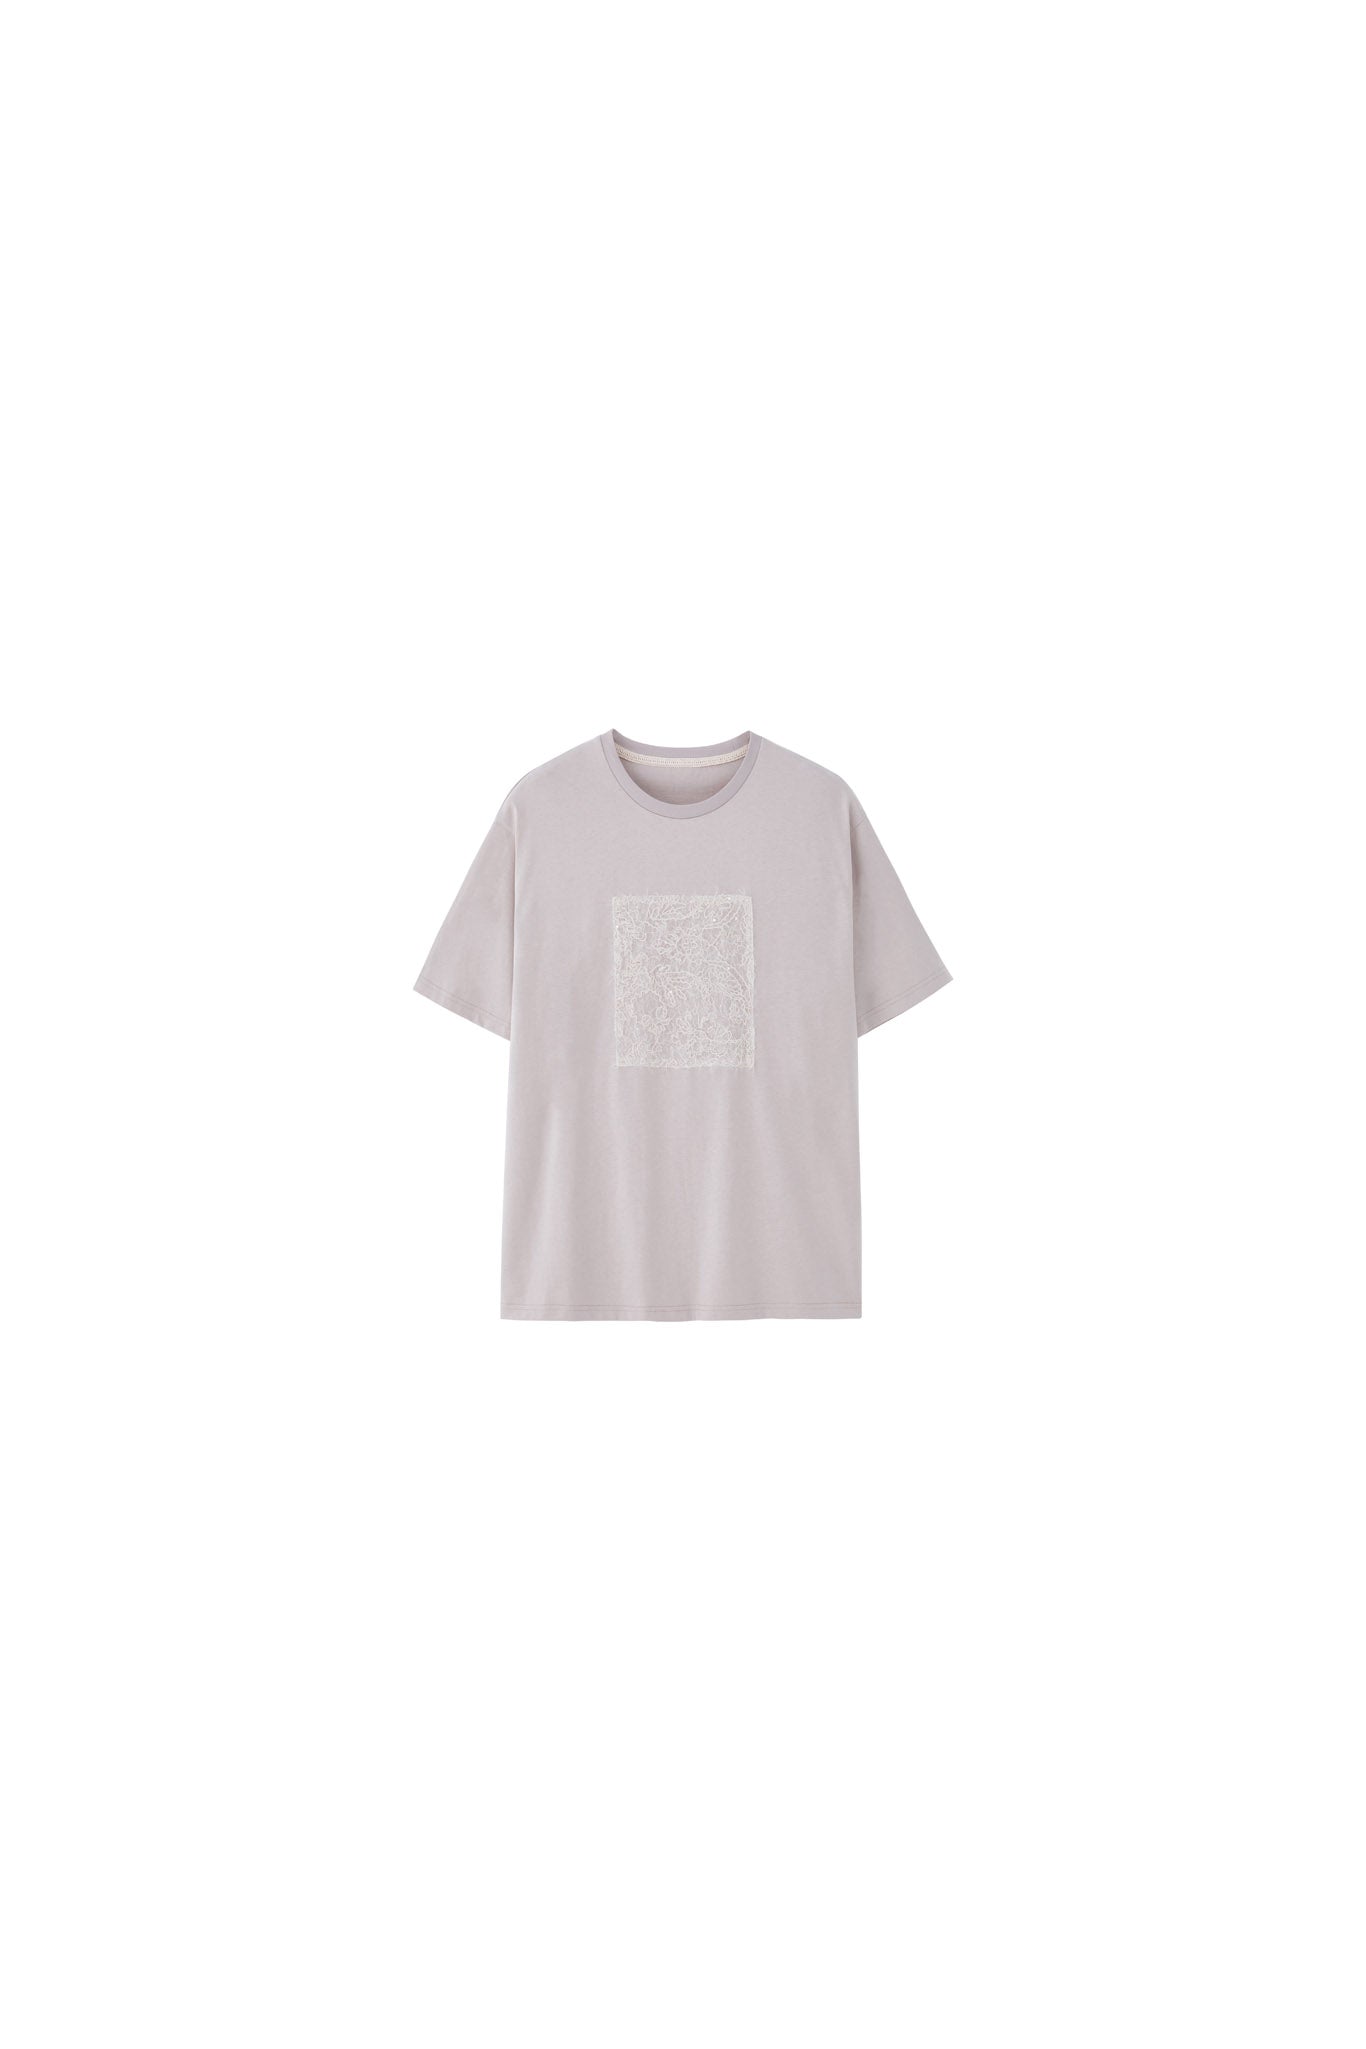 【tageechita】スパンコールレースパッチTシャツ